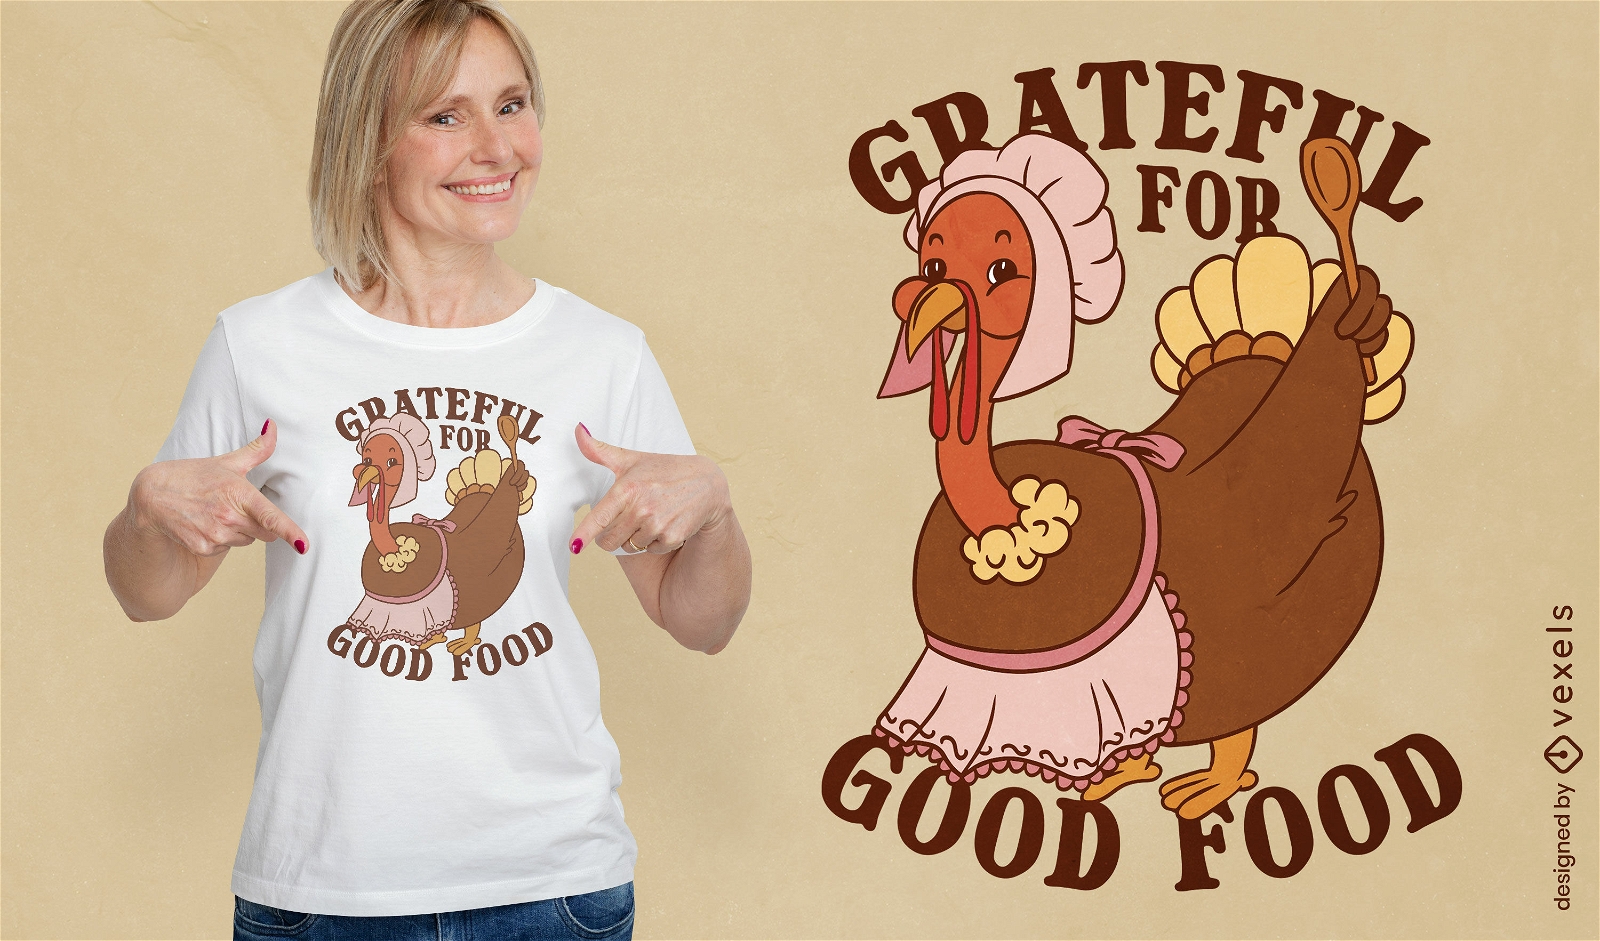 Agradecido por el buen dise?o de camisetas de comida.